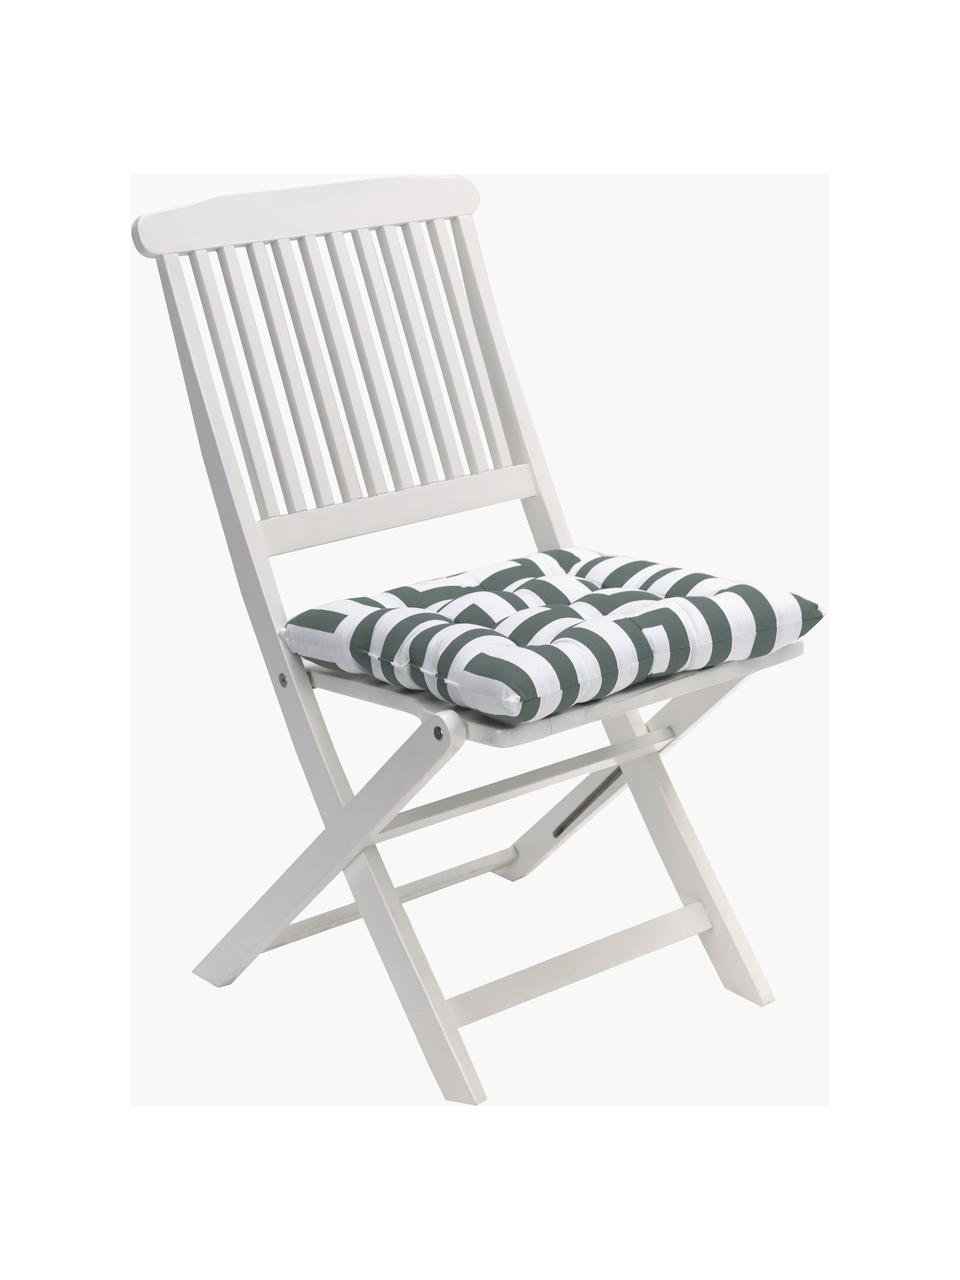 Poduszka na krzesło z bawełny Bram, Ciemny zielony, biały, S 40 x D 40 cm